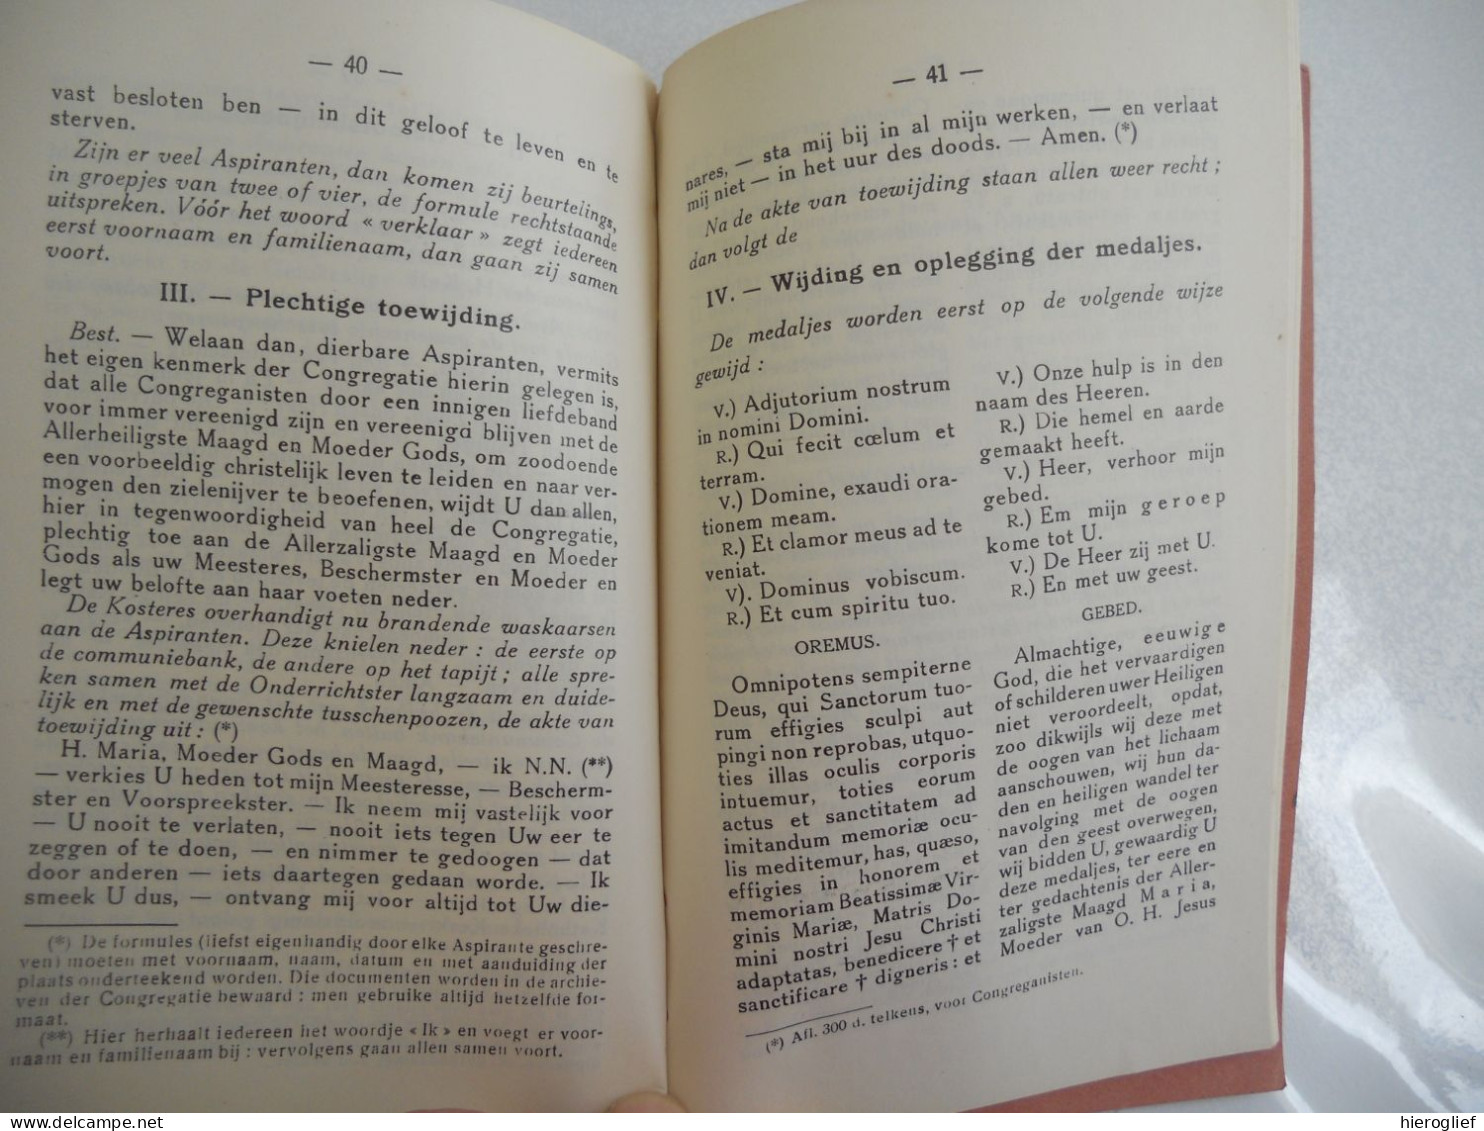 Handboekje Der CONGREGATIE Van O.L. Vrouw Onbevlekt Ontvangen / Impr 1903 Denderrmonde Van Lantschoot Moens - Antiguos